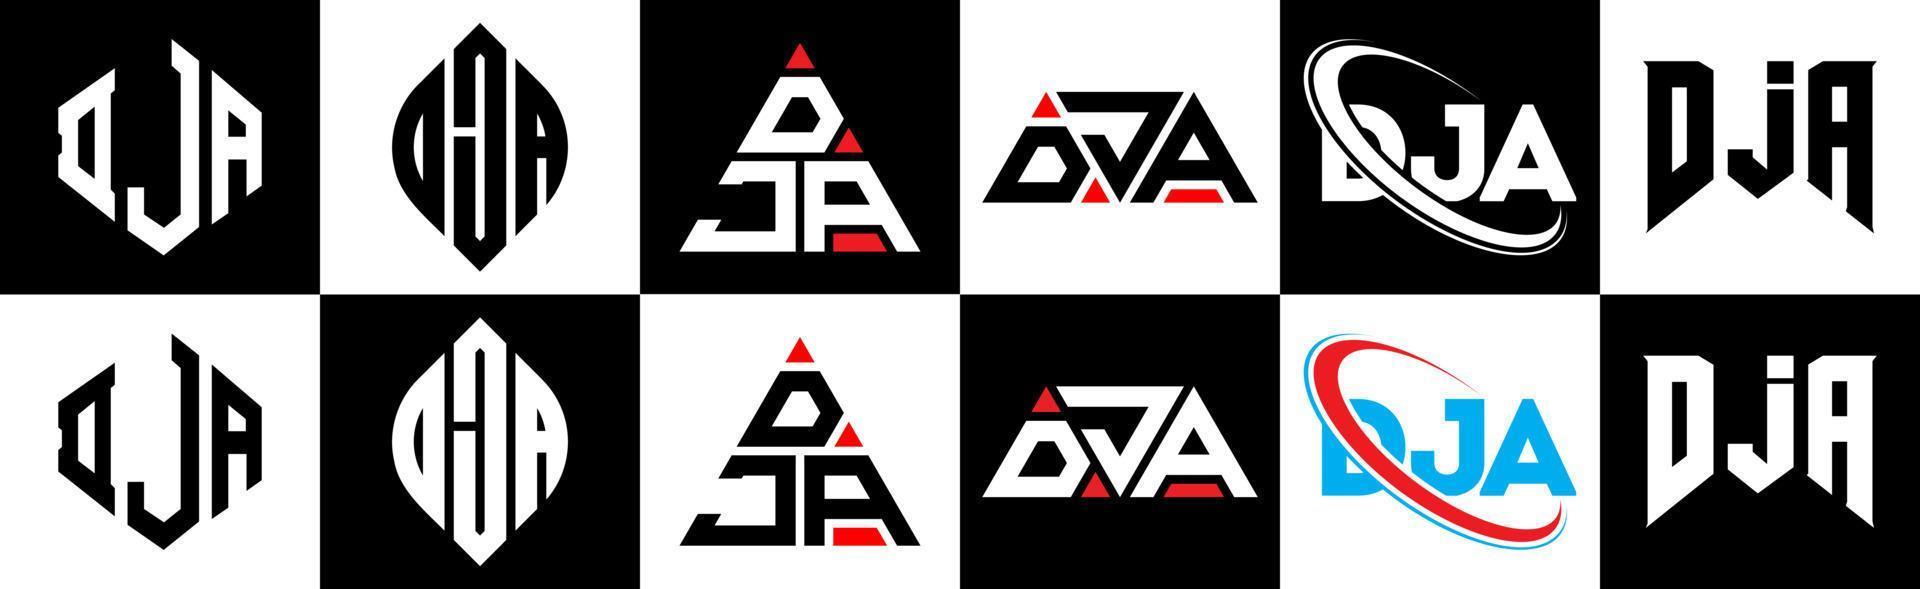 création de logo de lettre dja en six styles. polygone dja, cercle, triangle, hexagone, style plat et simple avec logo de lettre de variation de couleur noir et blanc dans un plan de travail. dja logo minimaliste et classique vecteur